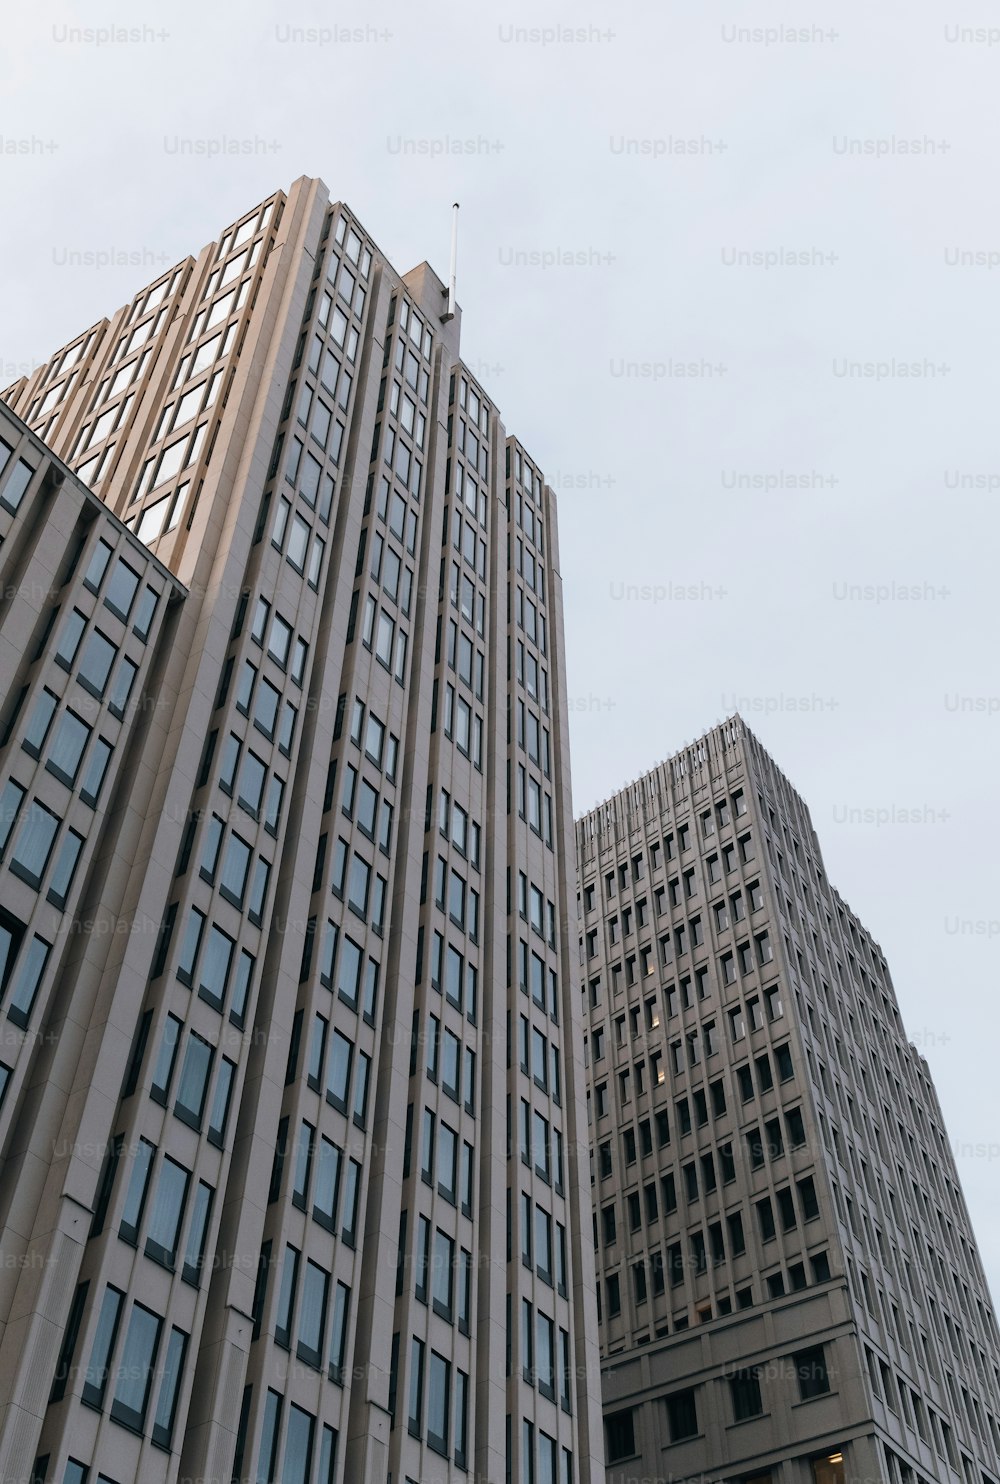 나란히 앉아있는 두 개의 고층 건물